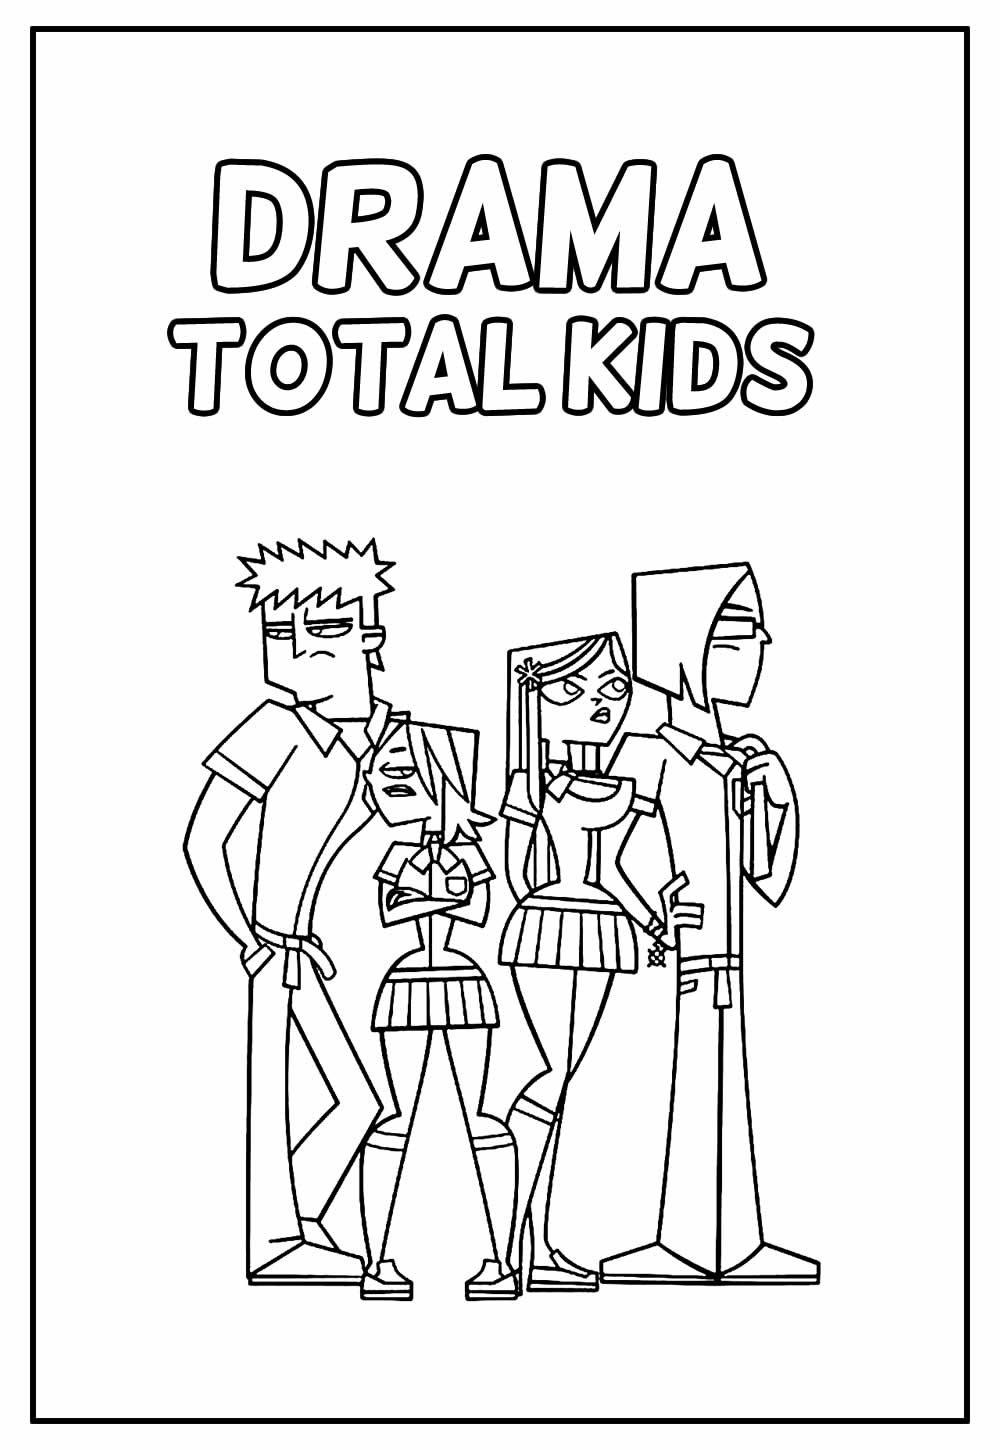 Desenho Educastivo de Drama Total Kids para pintar